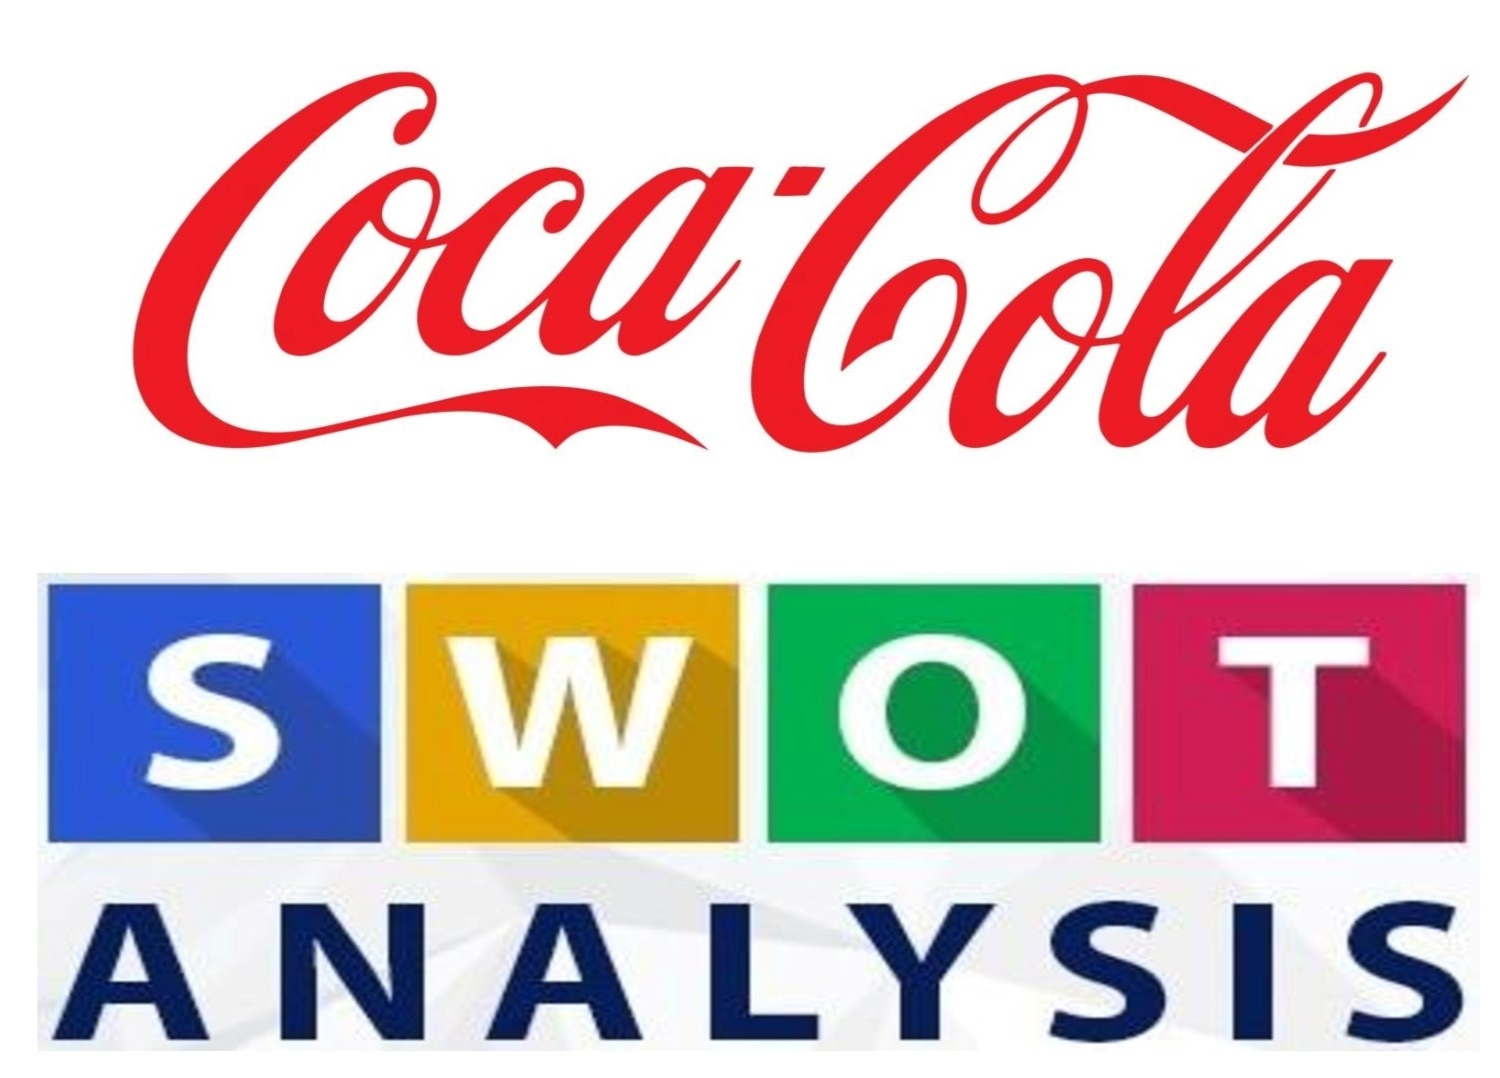 coca cola weaknesses swot